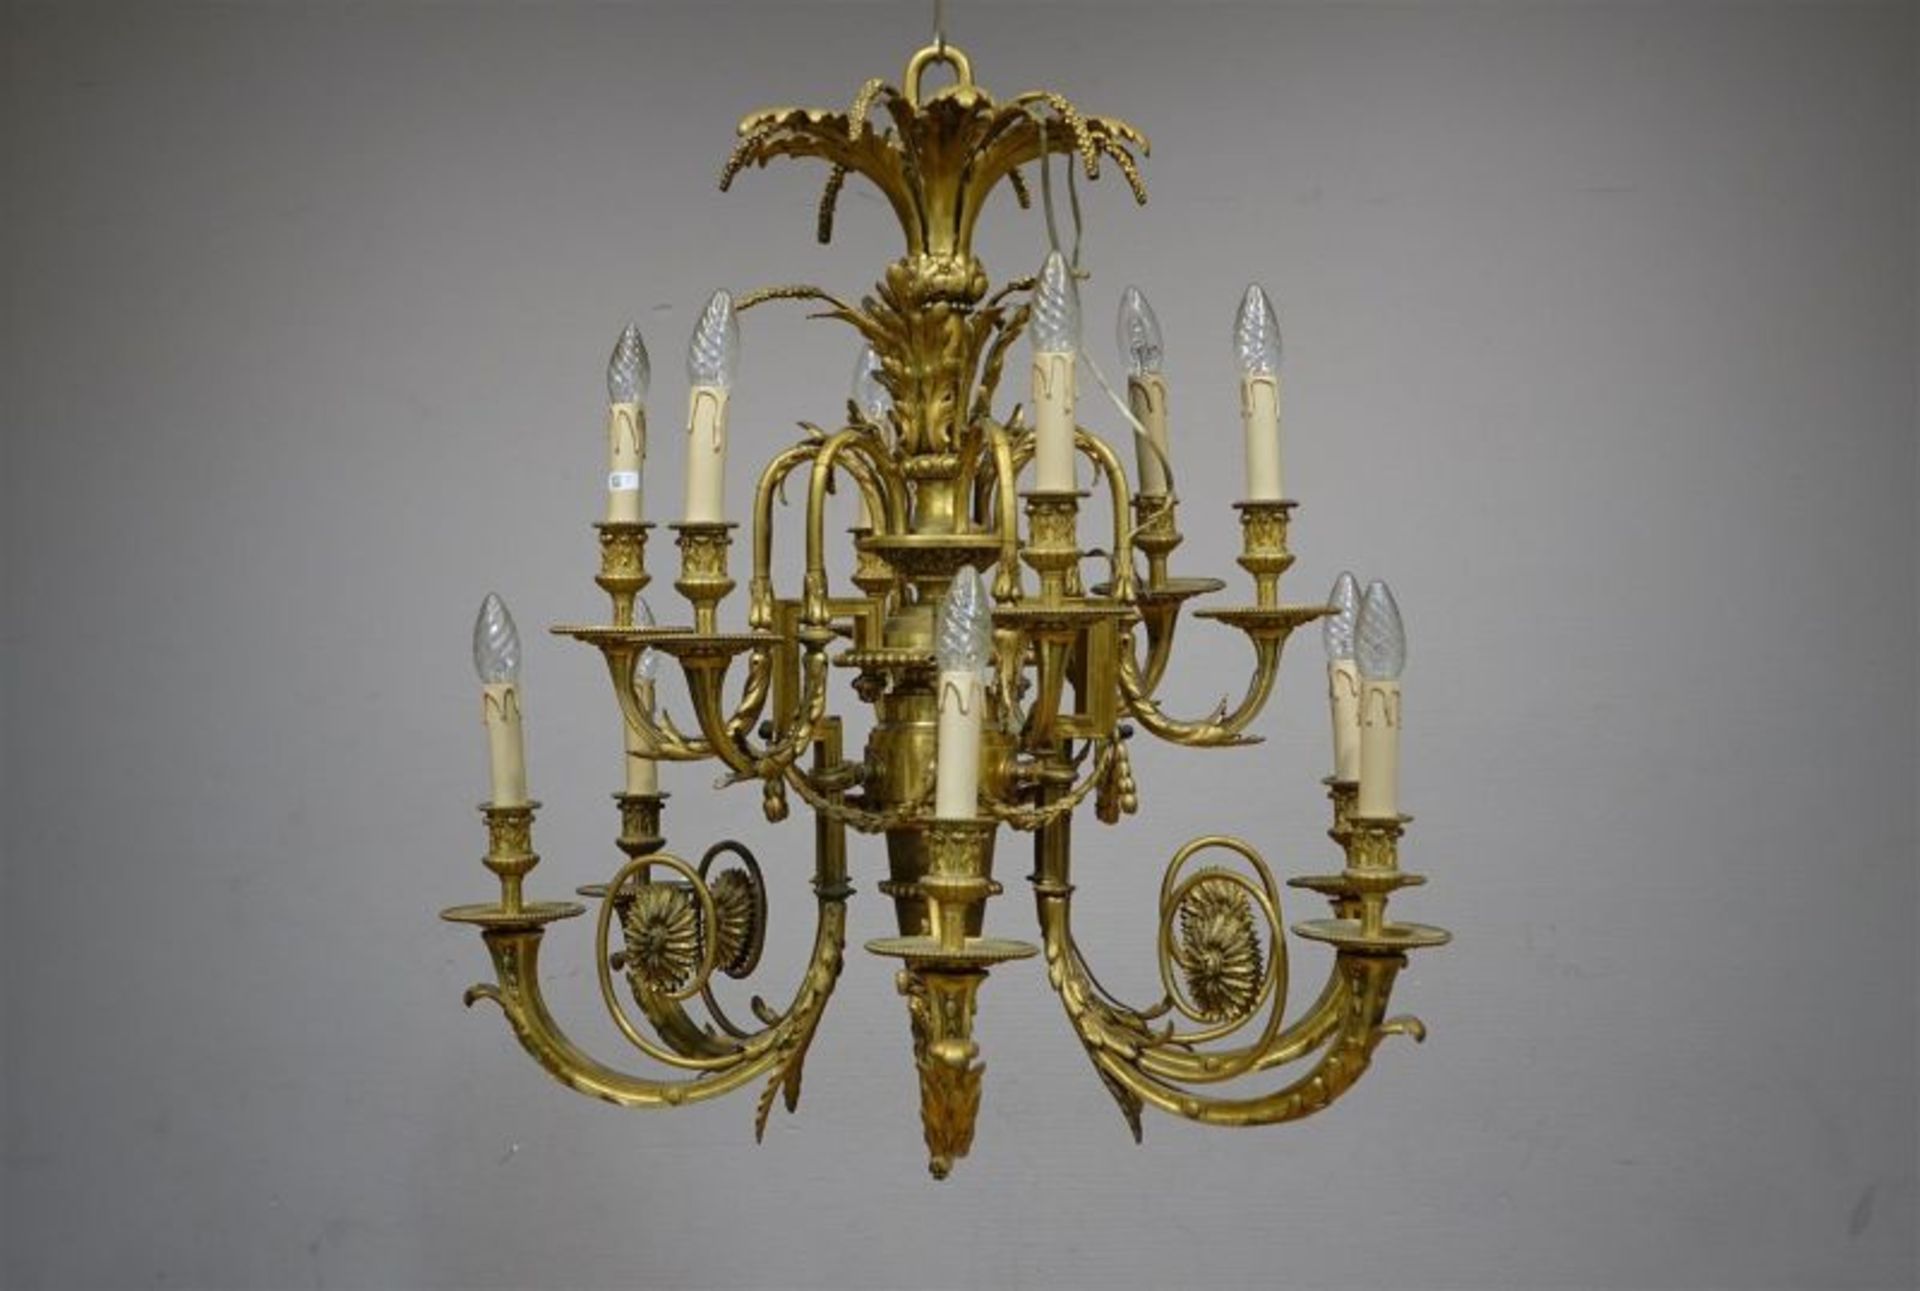 vergulde bronzen kroonlamp met 12 gebogen armen, versierd met guirlandes palmetten en ranken, 19e